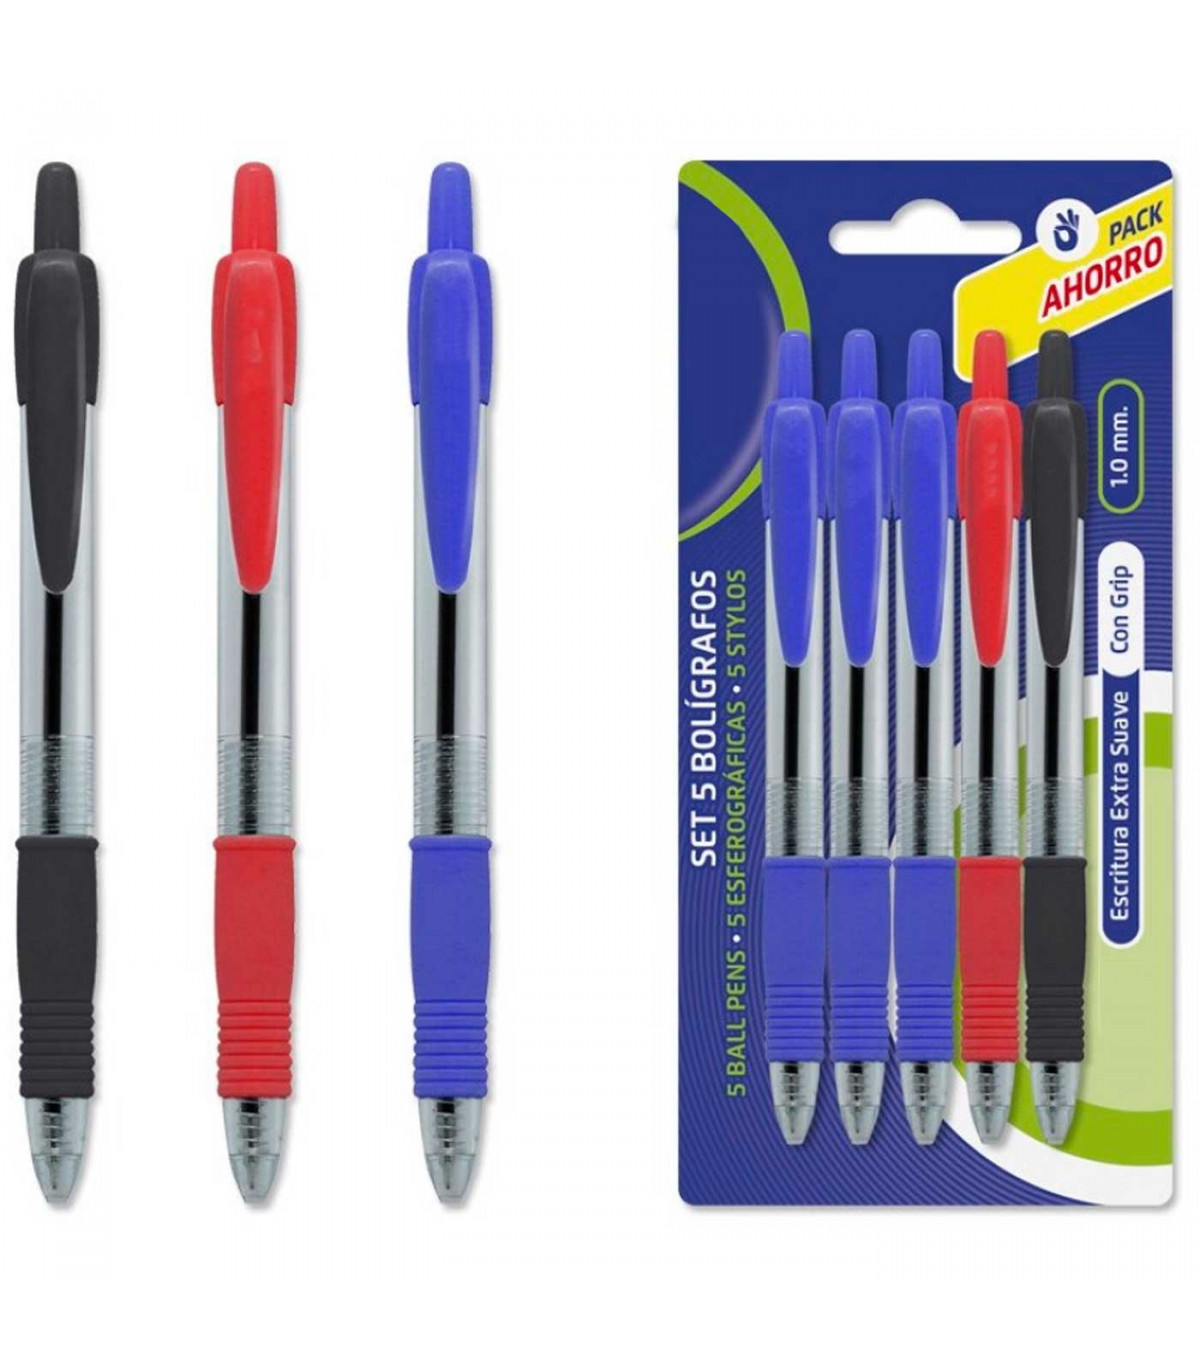 Tradineur - Pack de 5 bolígrafos de colores, tinta gel, punta de bola de 1  mm y grip ergonómico, escritura suave y precisa, uso